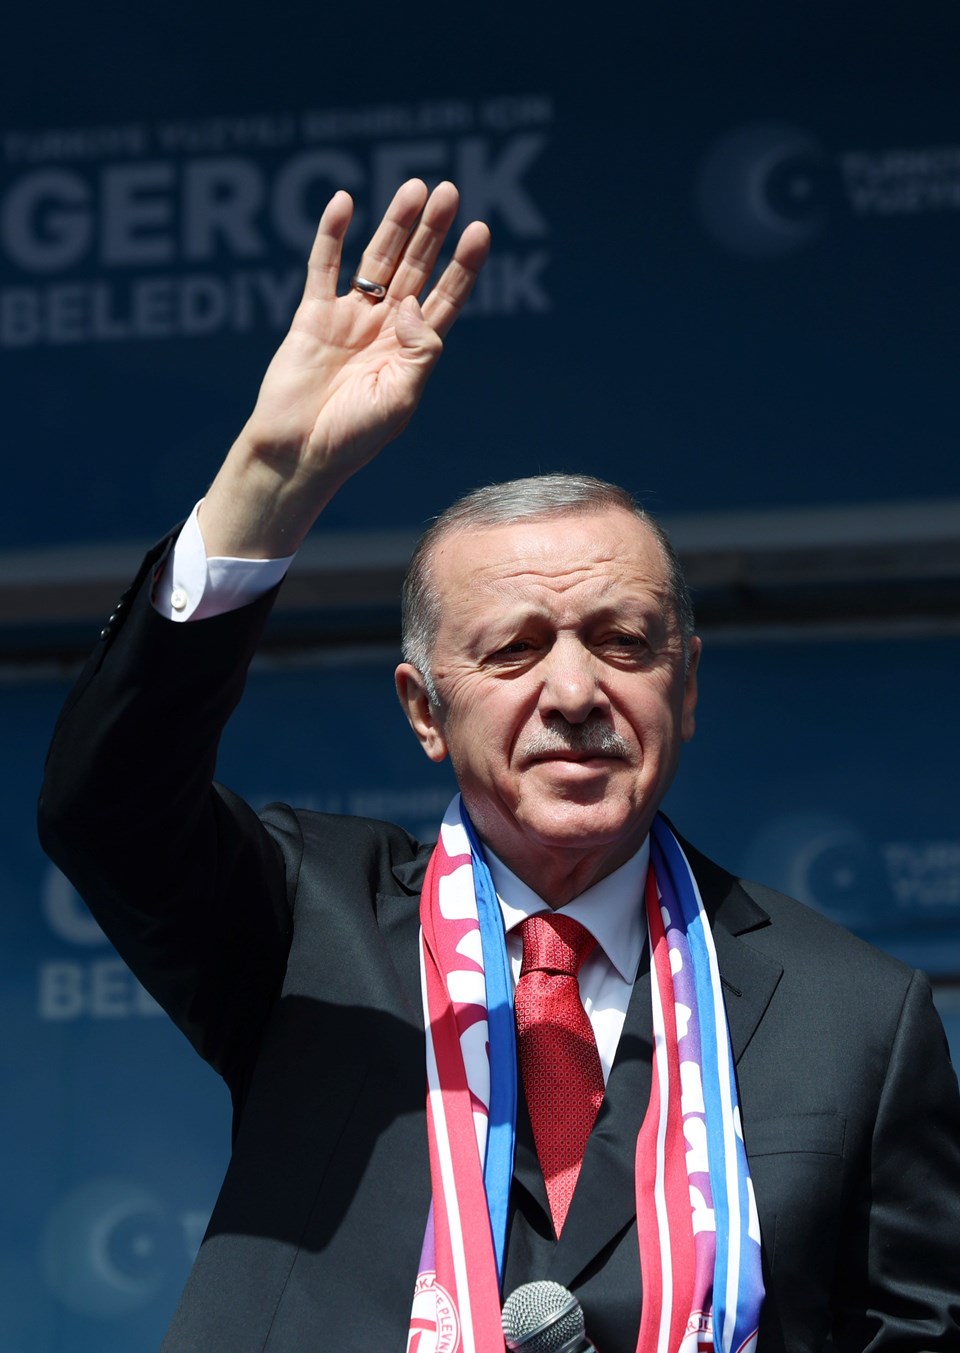 Cumhurbaşkanı Erdoğan’dan ekonomi mesajları: Çok iyi çalışılmış ekonomi programımızla ne yaptığımızı çok iyi biliyoruz - 2